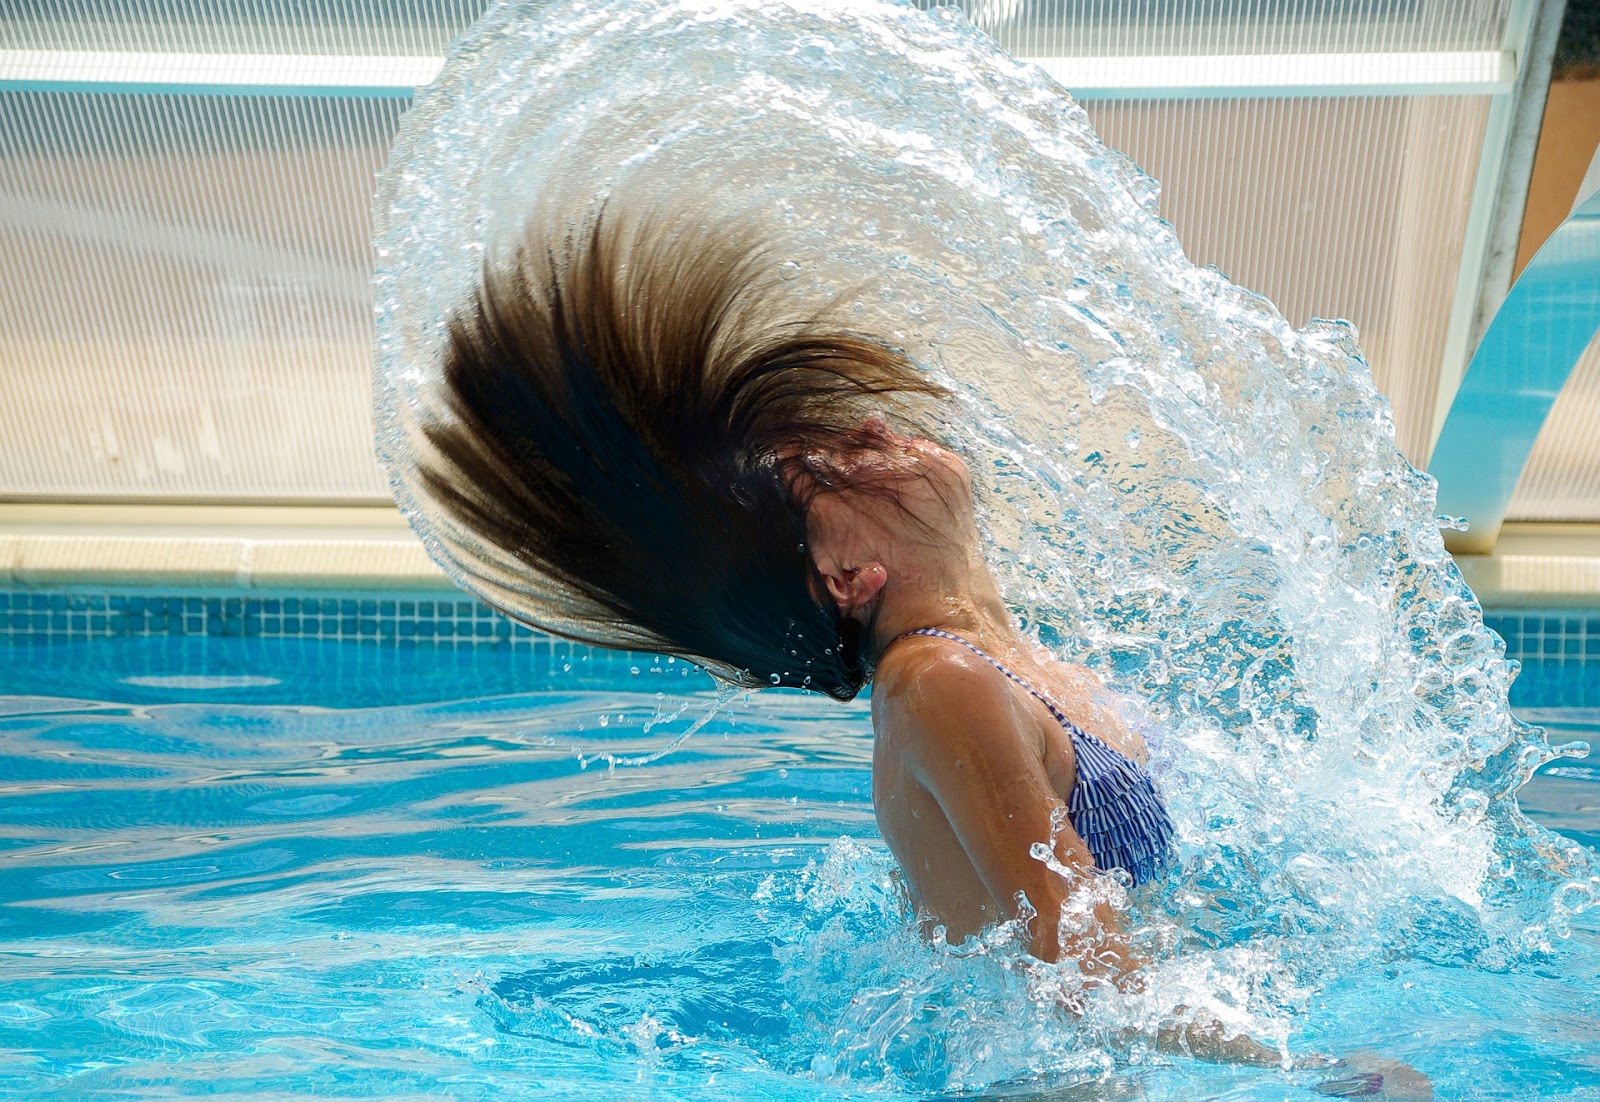 Longs Cheveux au Naturel: Aller régulièrement à la piscine avec de